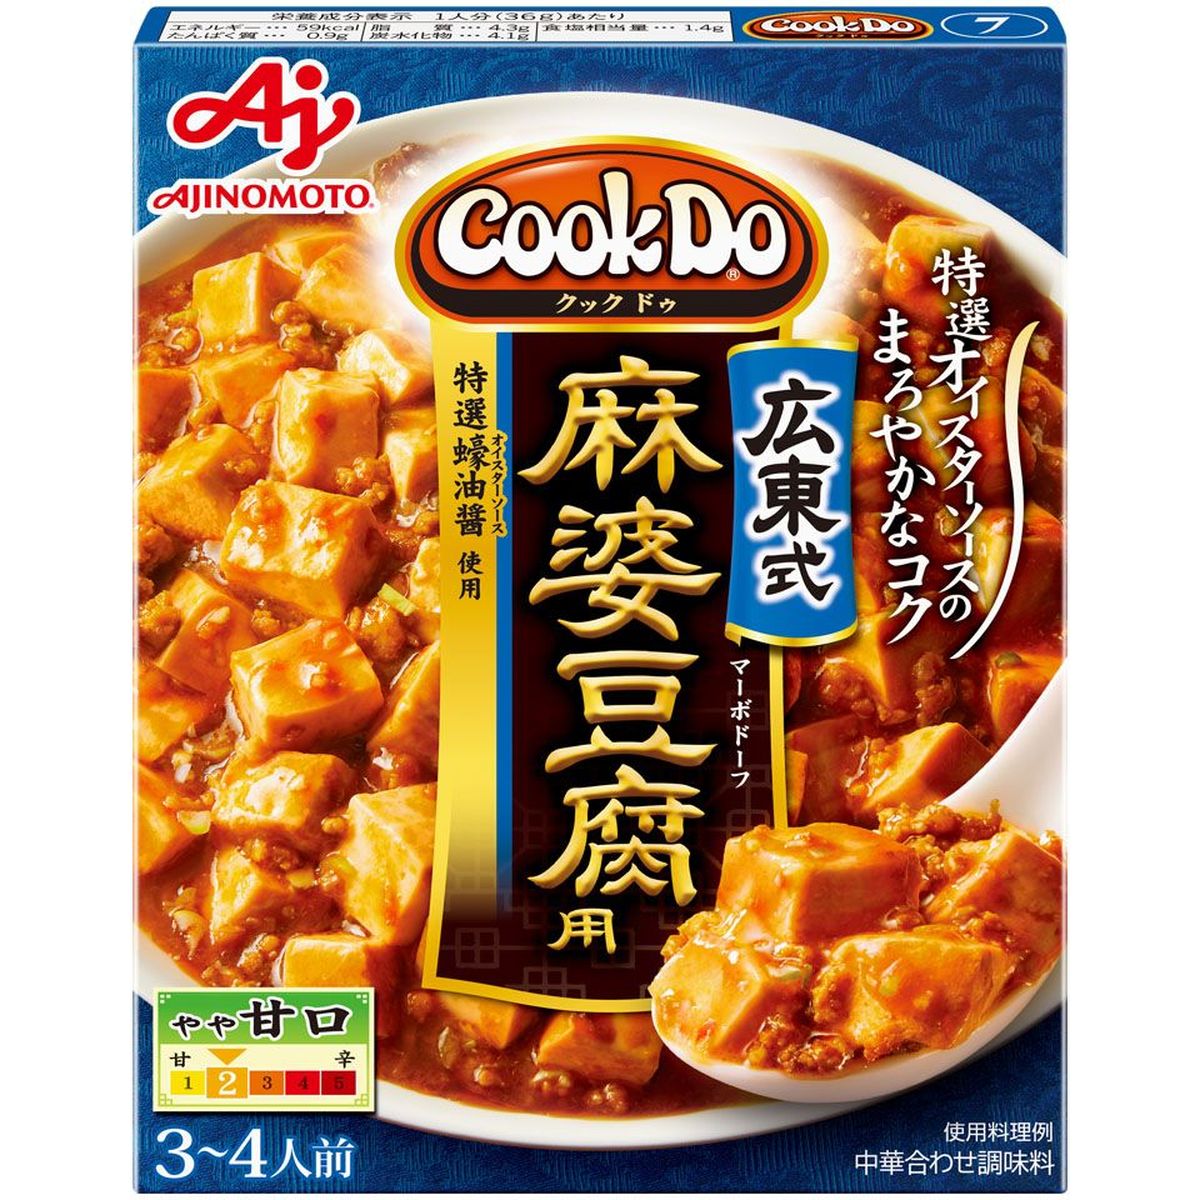 CookDo  クックドゥー  広東式麻婆豆腐用  125g  x  10